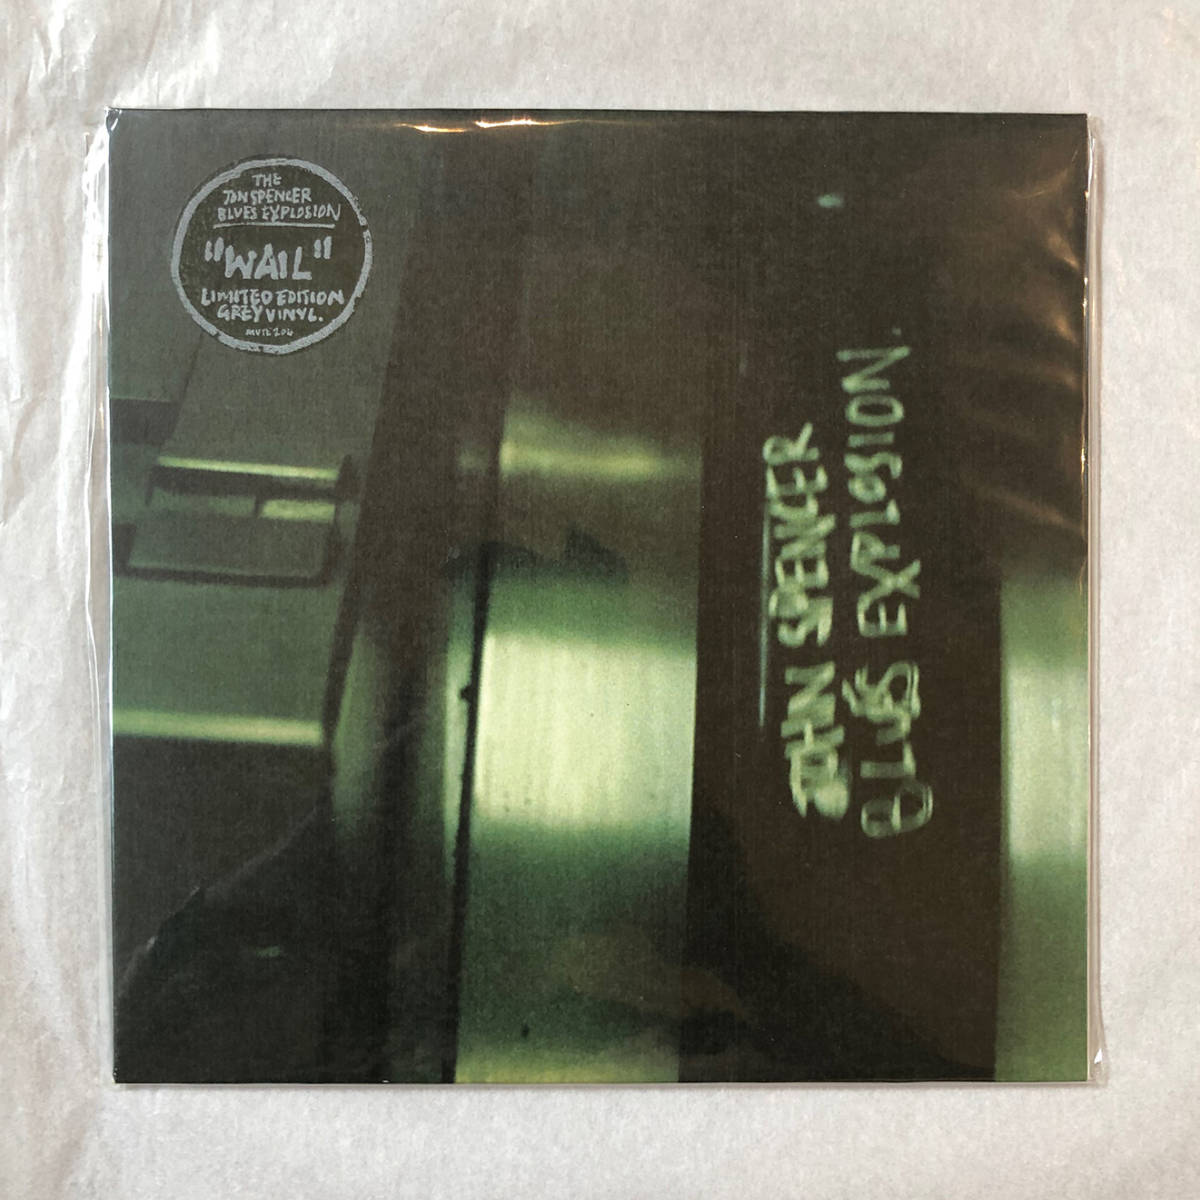 ■1997年 UK盤 オリジナル 新品 THE JON SPENCER BLUES EXPLOSION - Wail 7”EP Limited Edition, Grey Vinyl MUTE 204 Mute_画像1